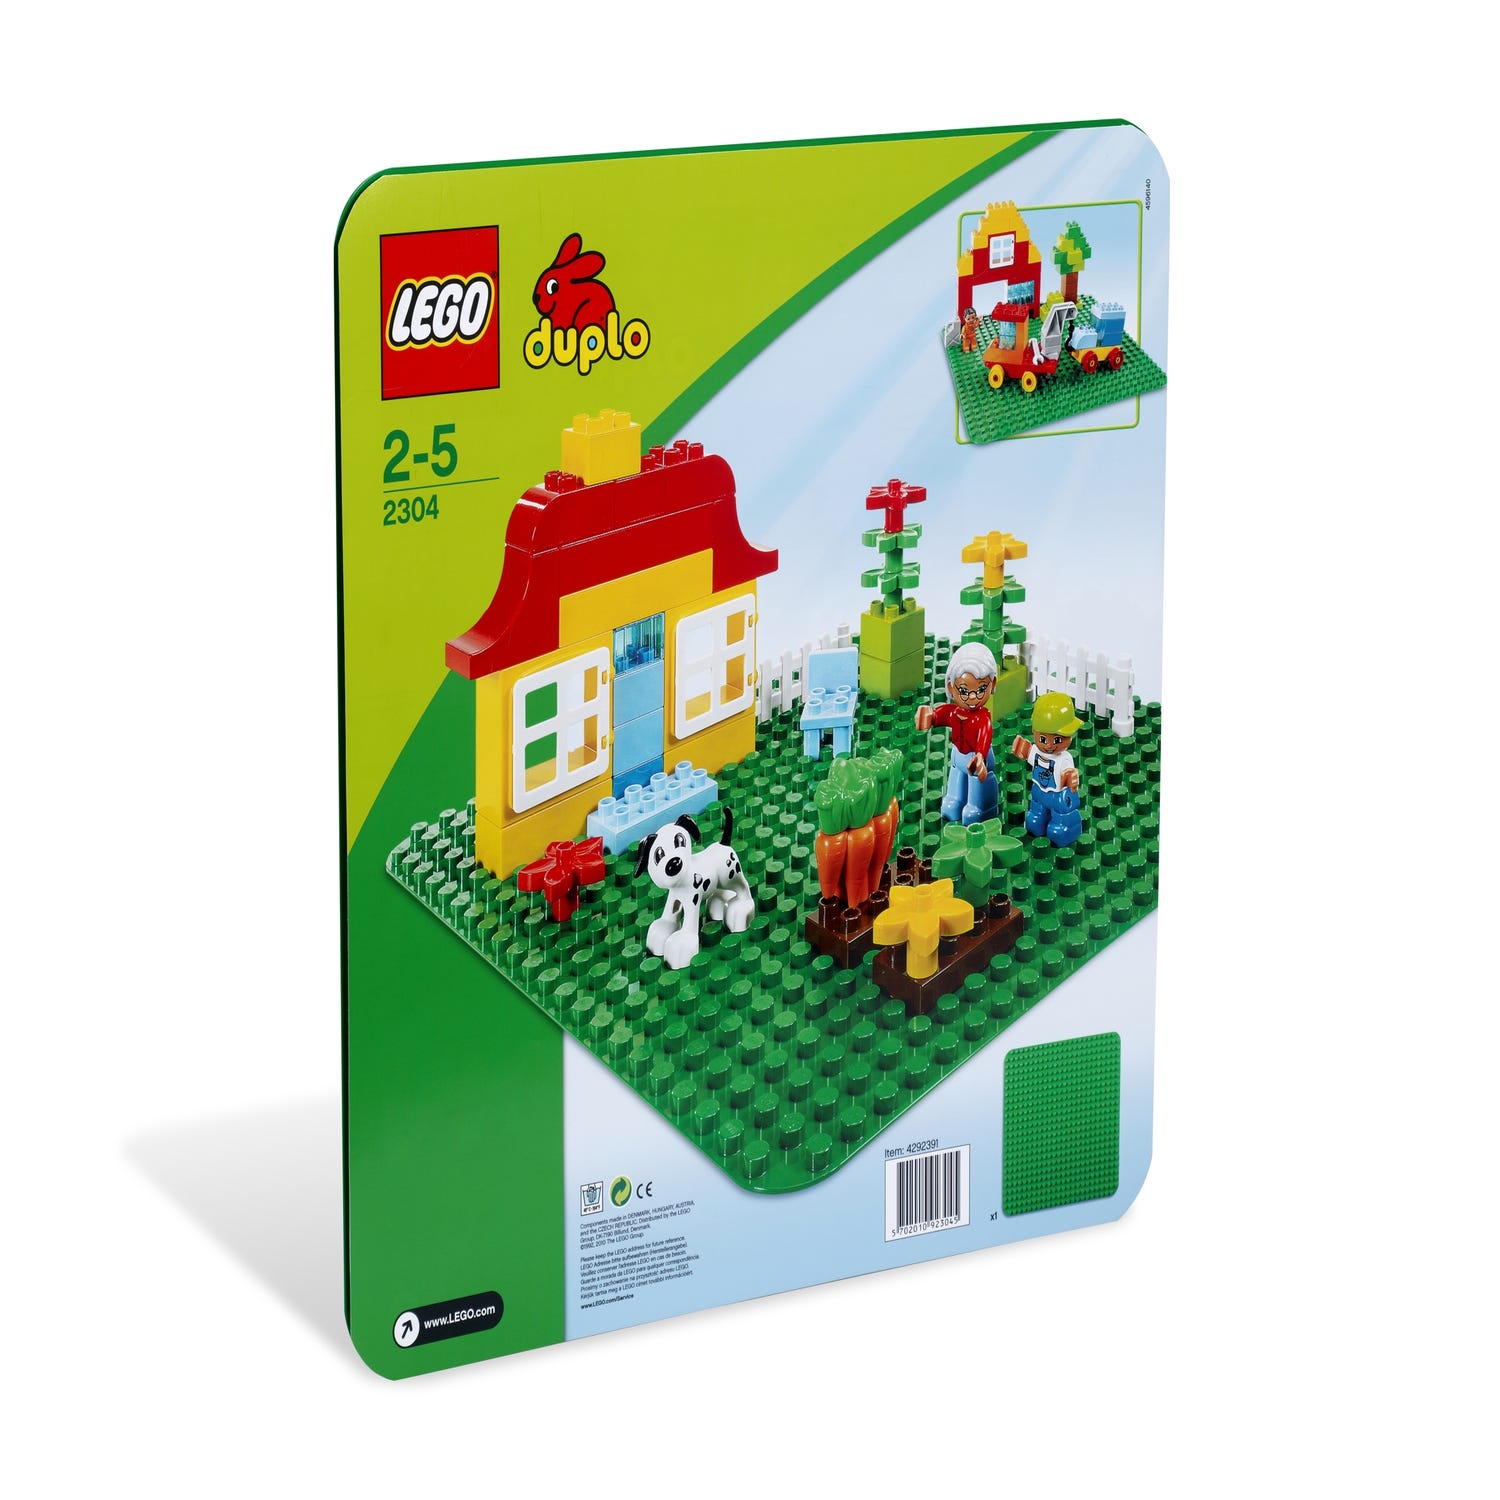 Duplo - Plaque de base verte (2304) LEGO